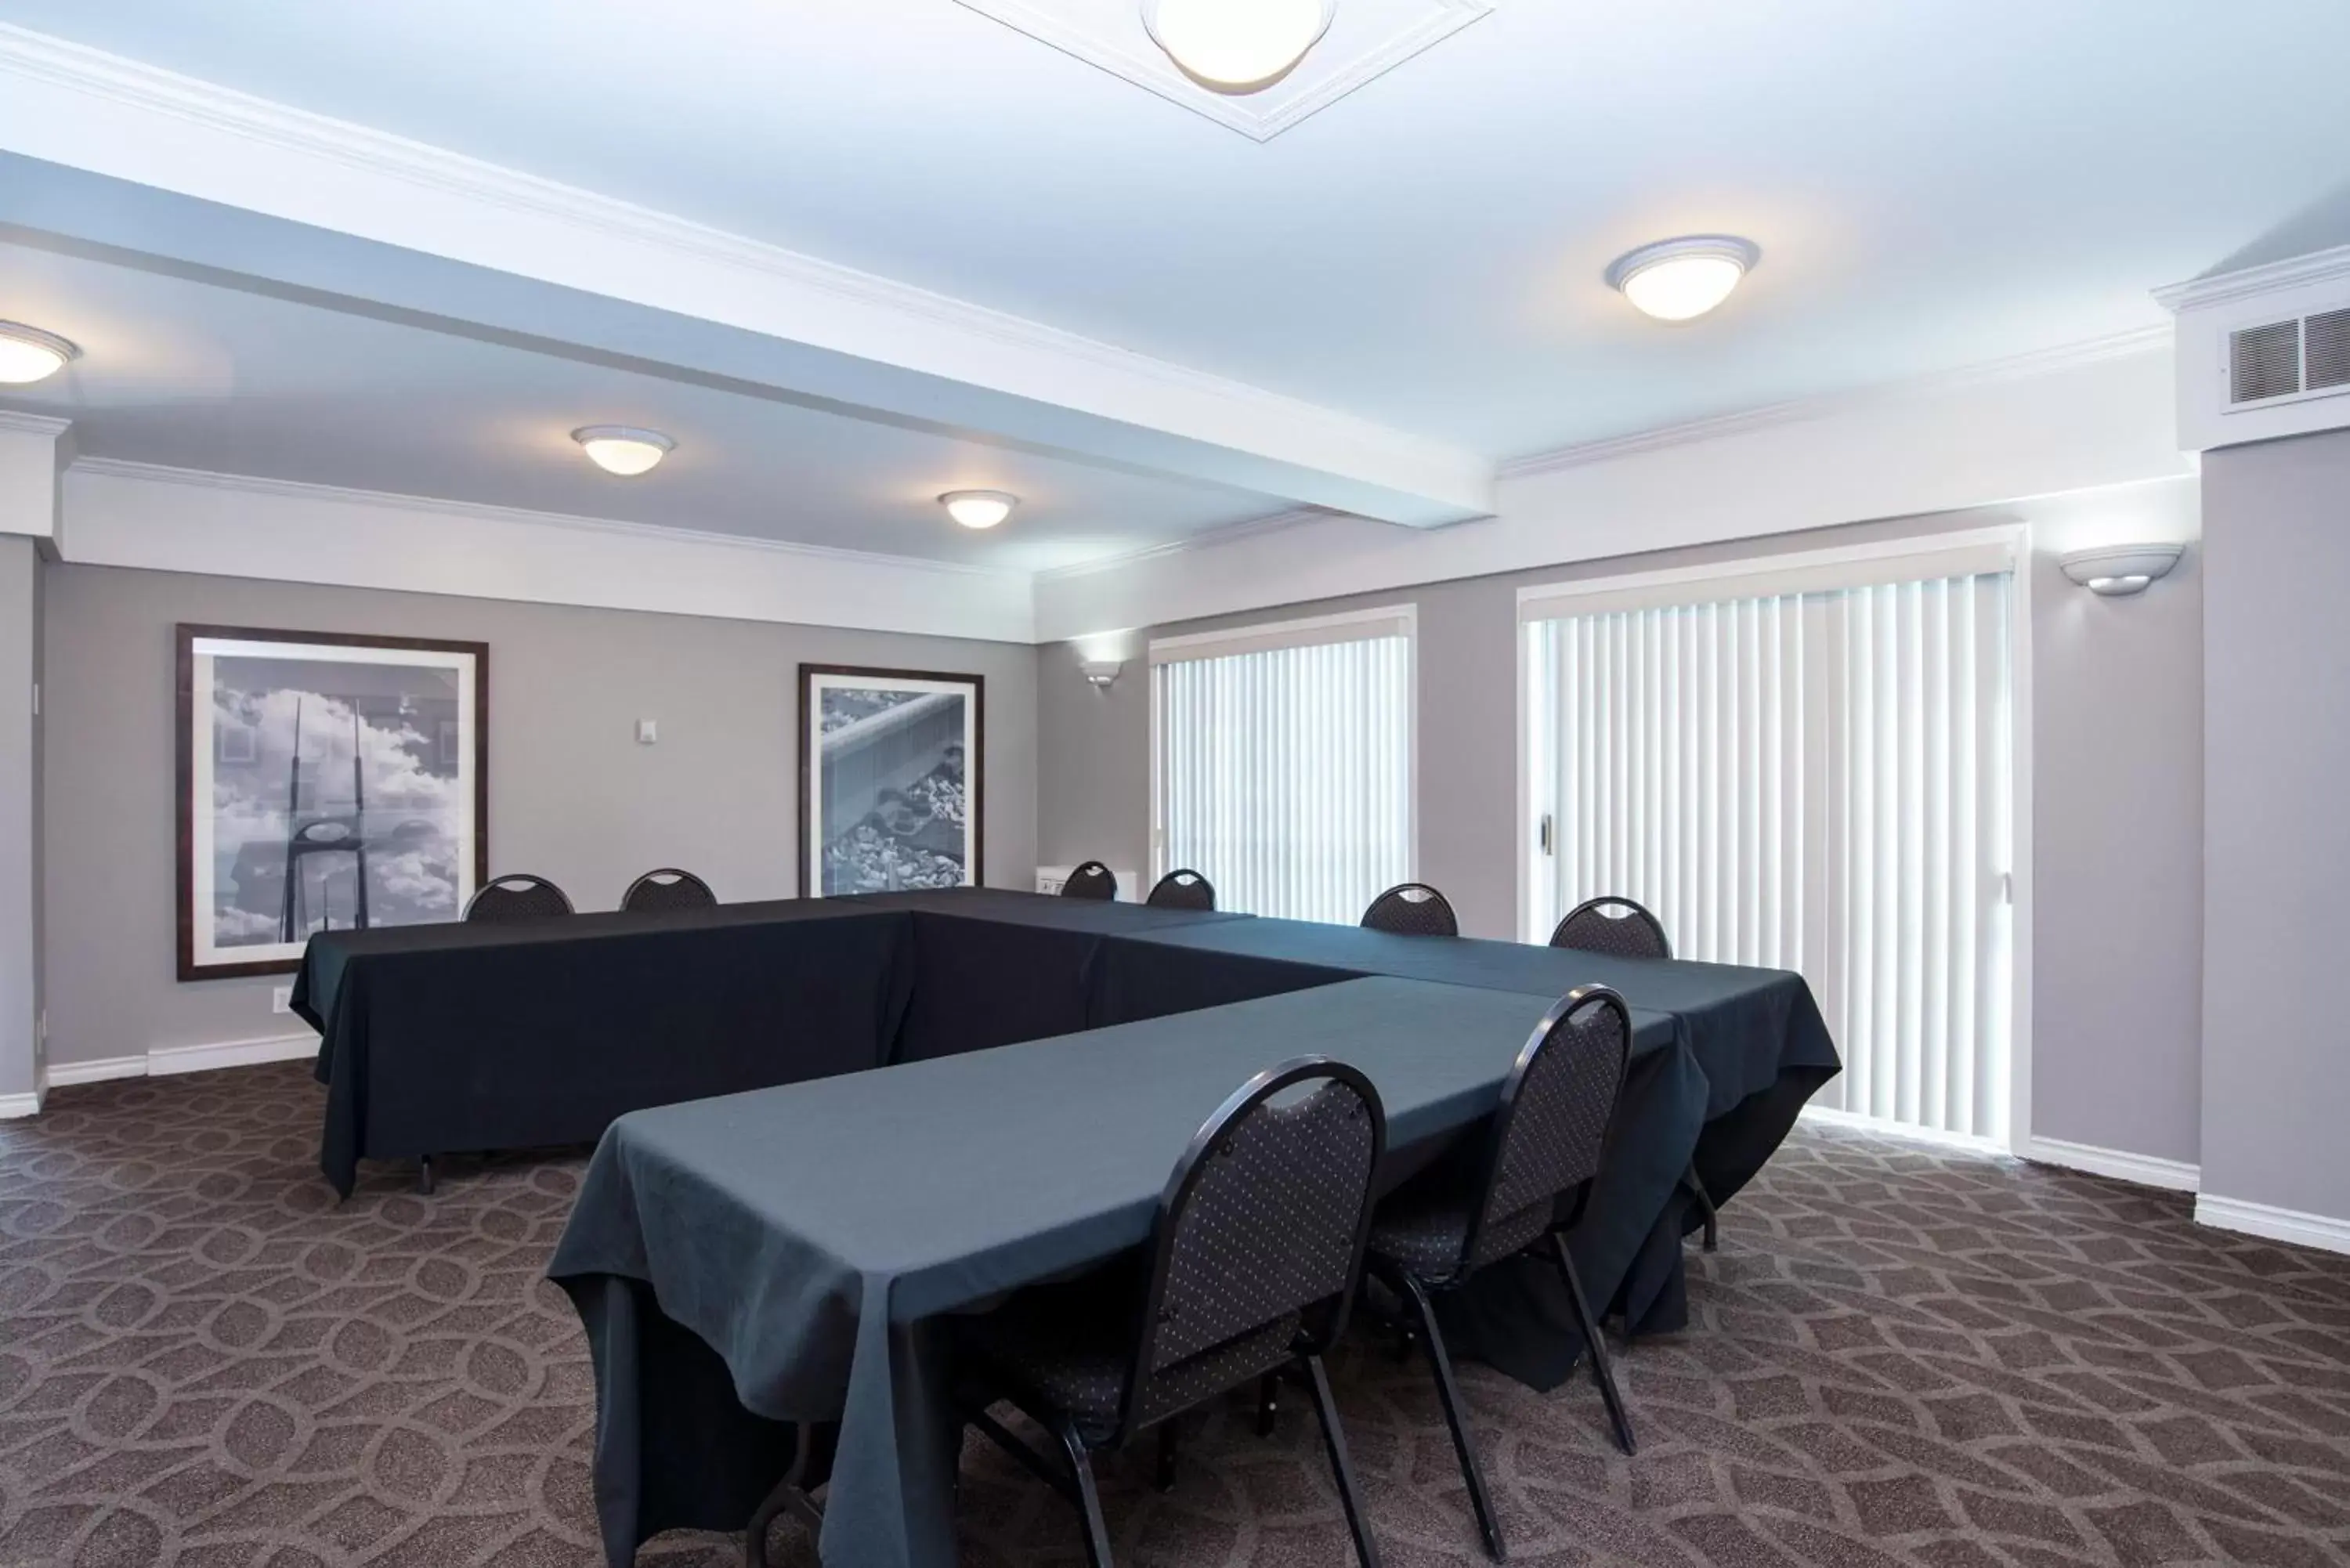 Meeting/conference room in Sandman Inn Kamloops